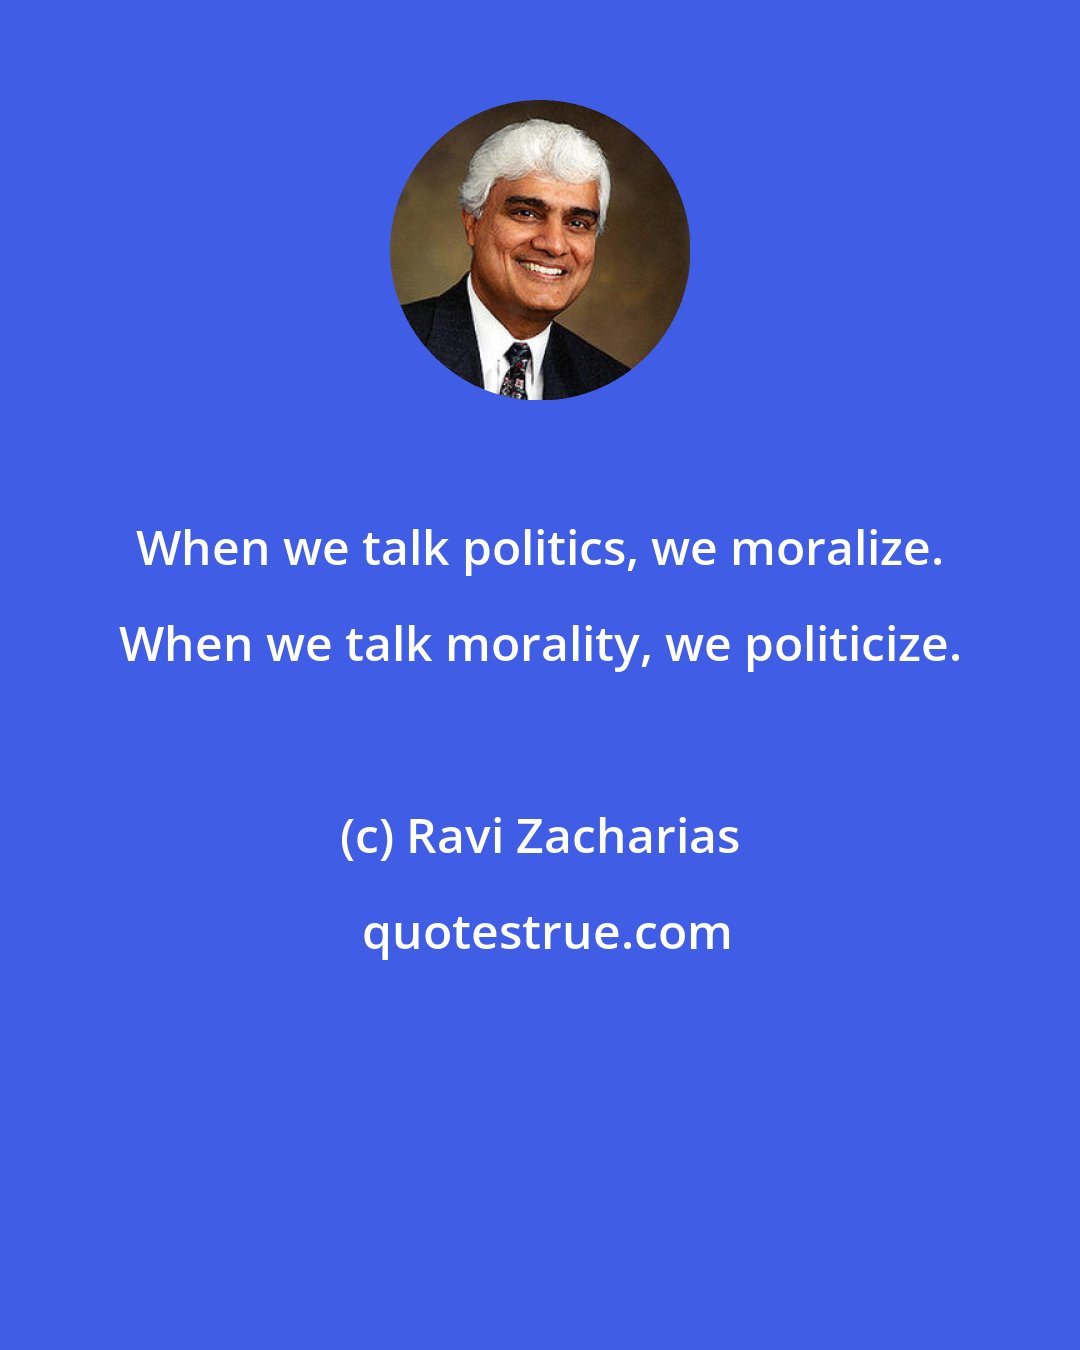 Ravi Zacharias: When we talk politics, we moralize. When we talk morality, we politicize.